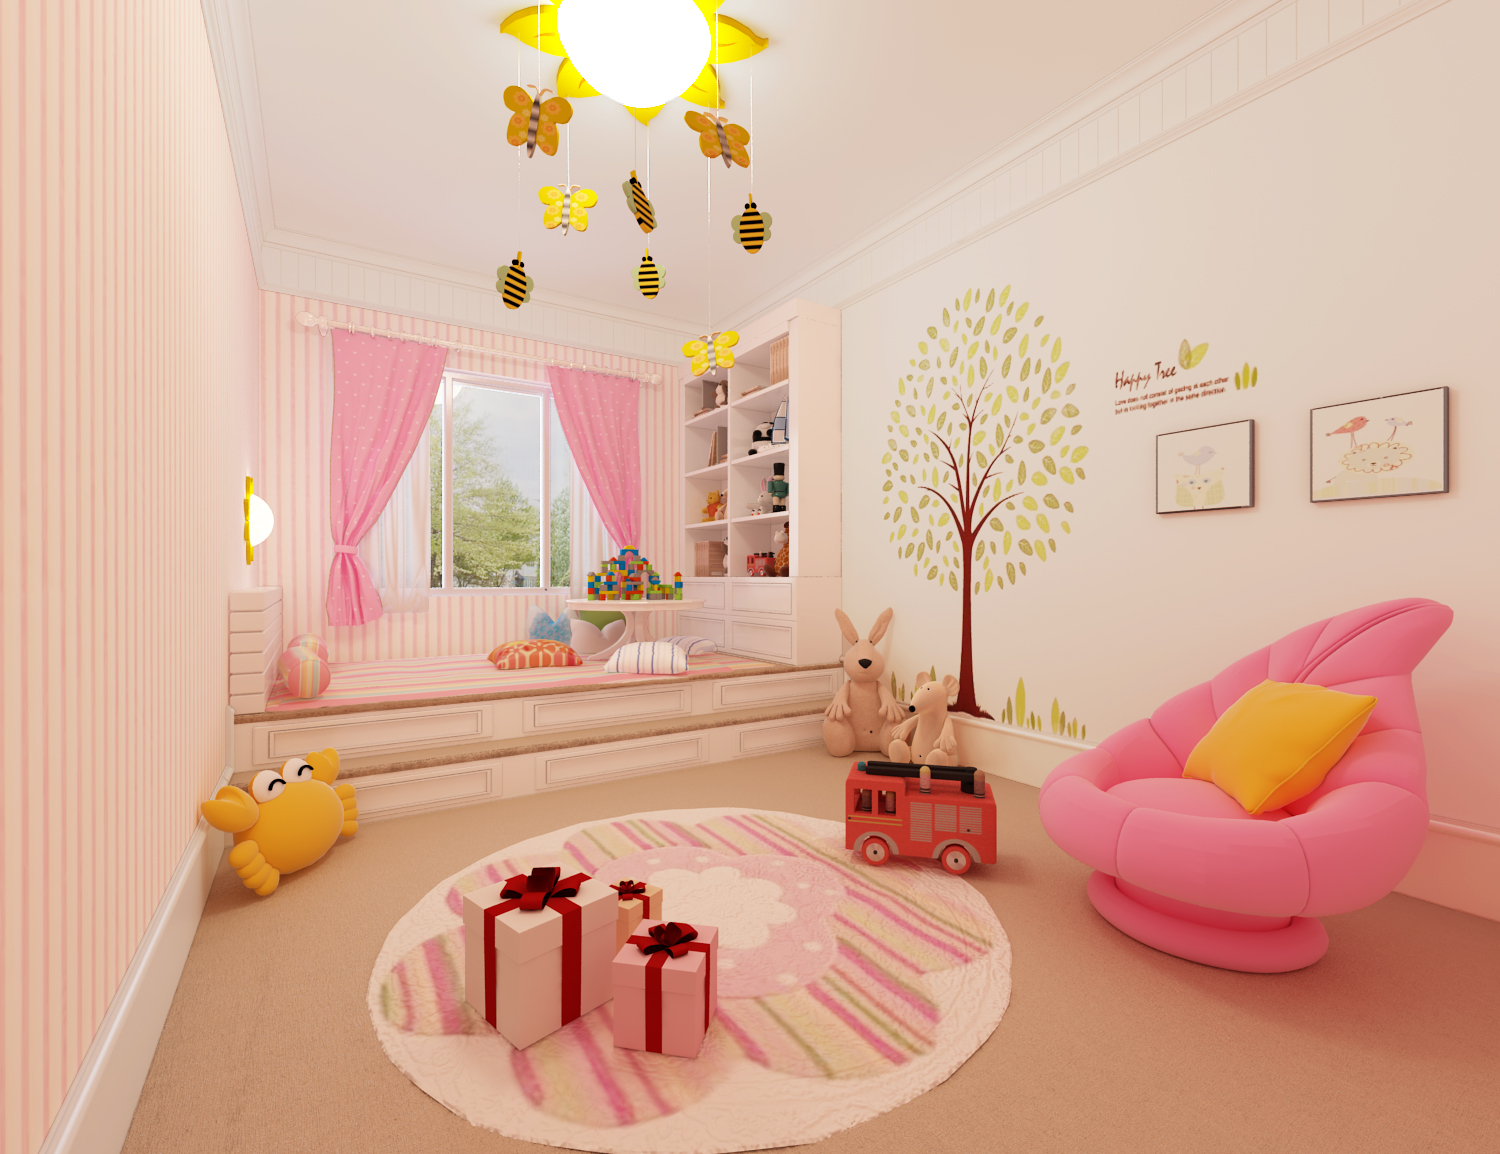 女儿的话,就该让她在一个吃那个满粉色的环境中成长,那么房间的布置就